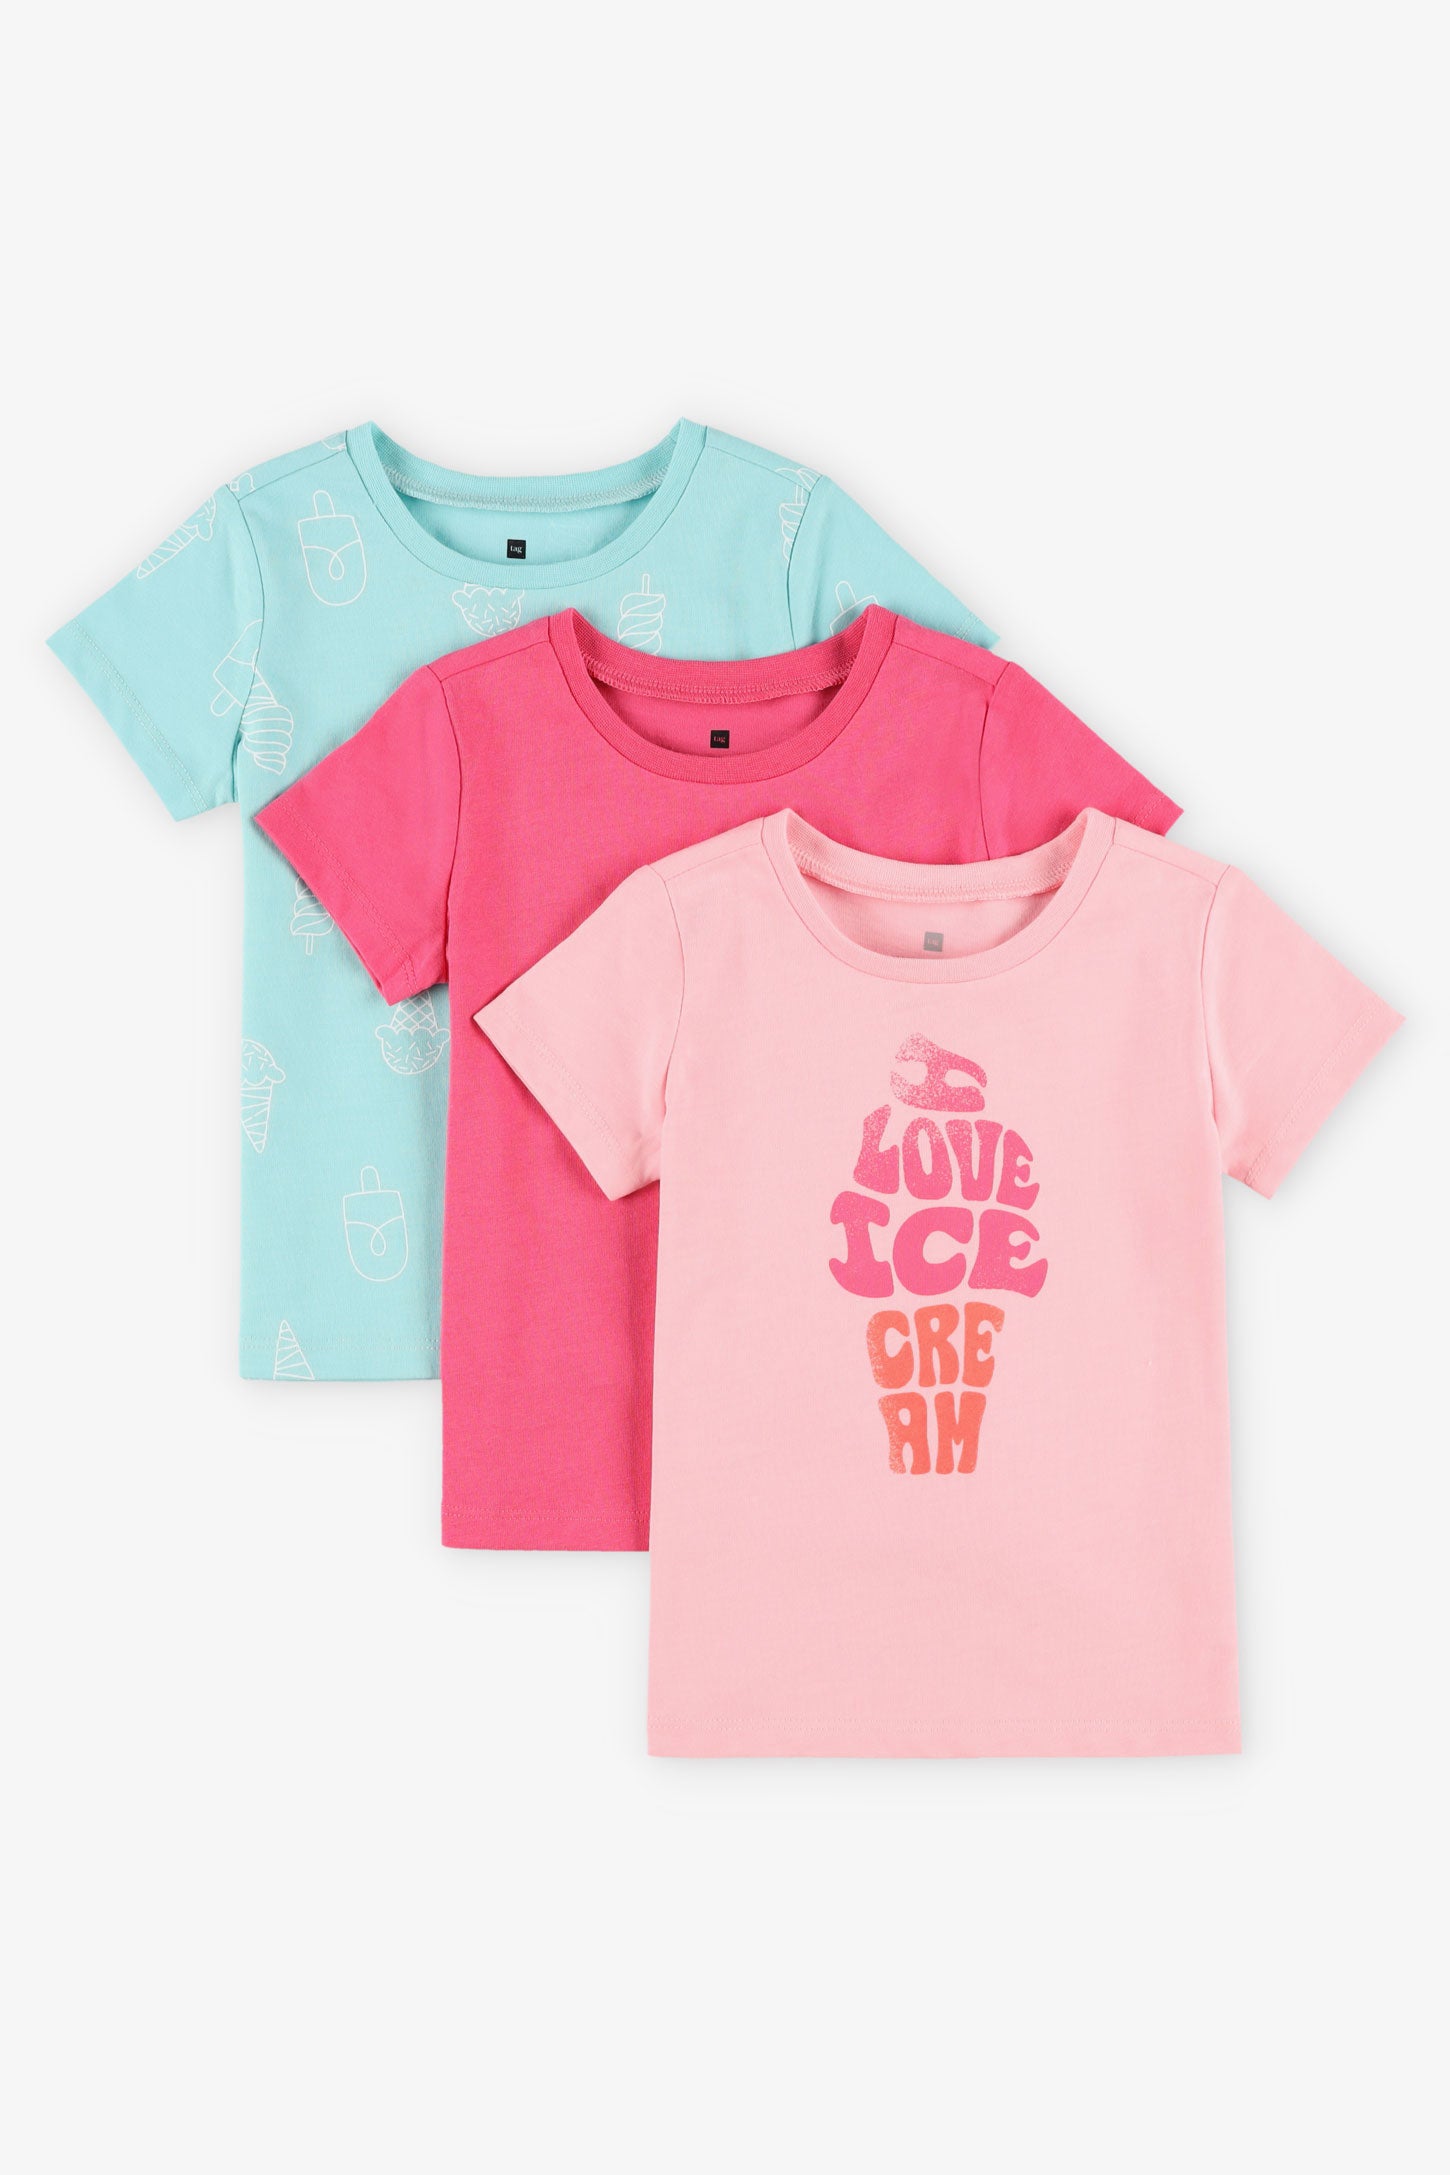 Prix pop, Lot de 3 t-shirts en coton - Bébé fille && ROSE